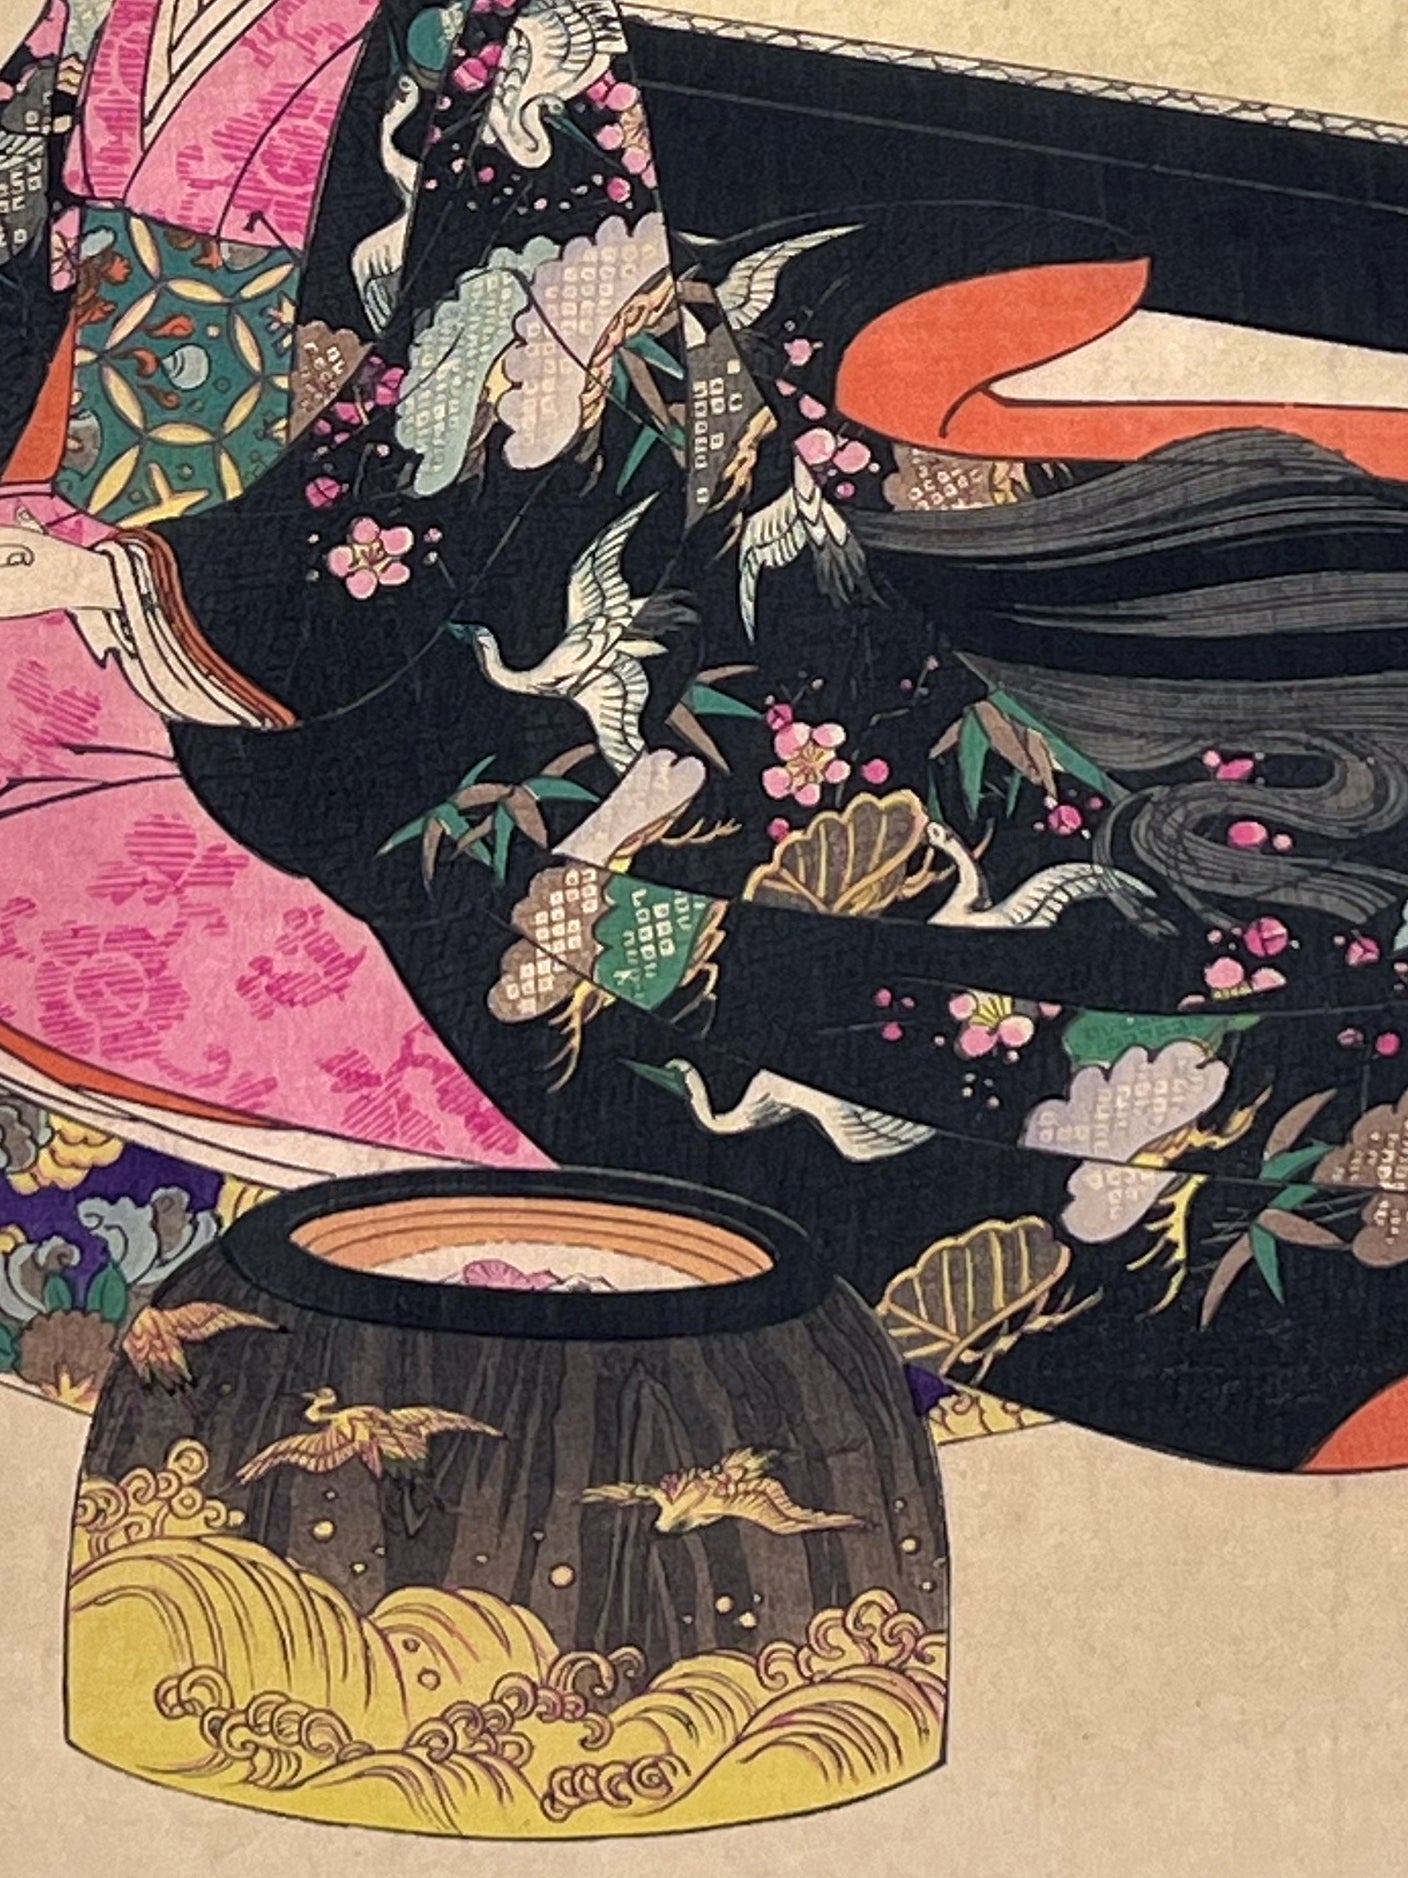 Estampe Japonaise de Chikanobu | Second repas du jour de l' An détail du kimono décor de grues sur fond noir